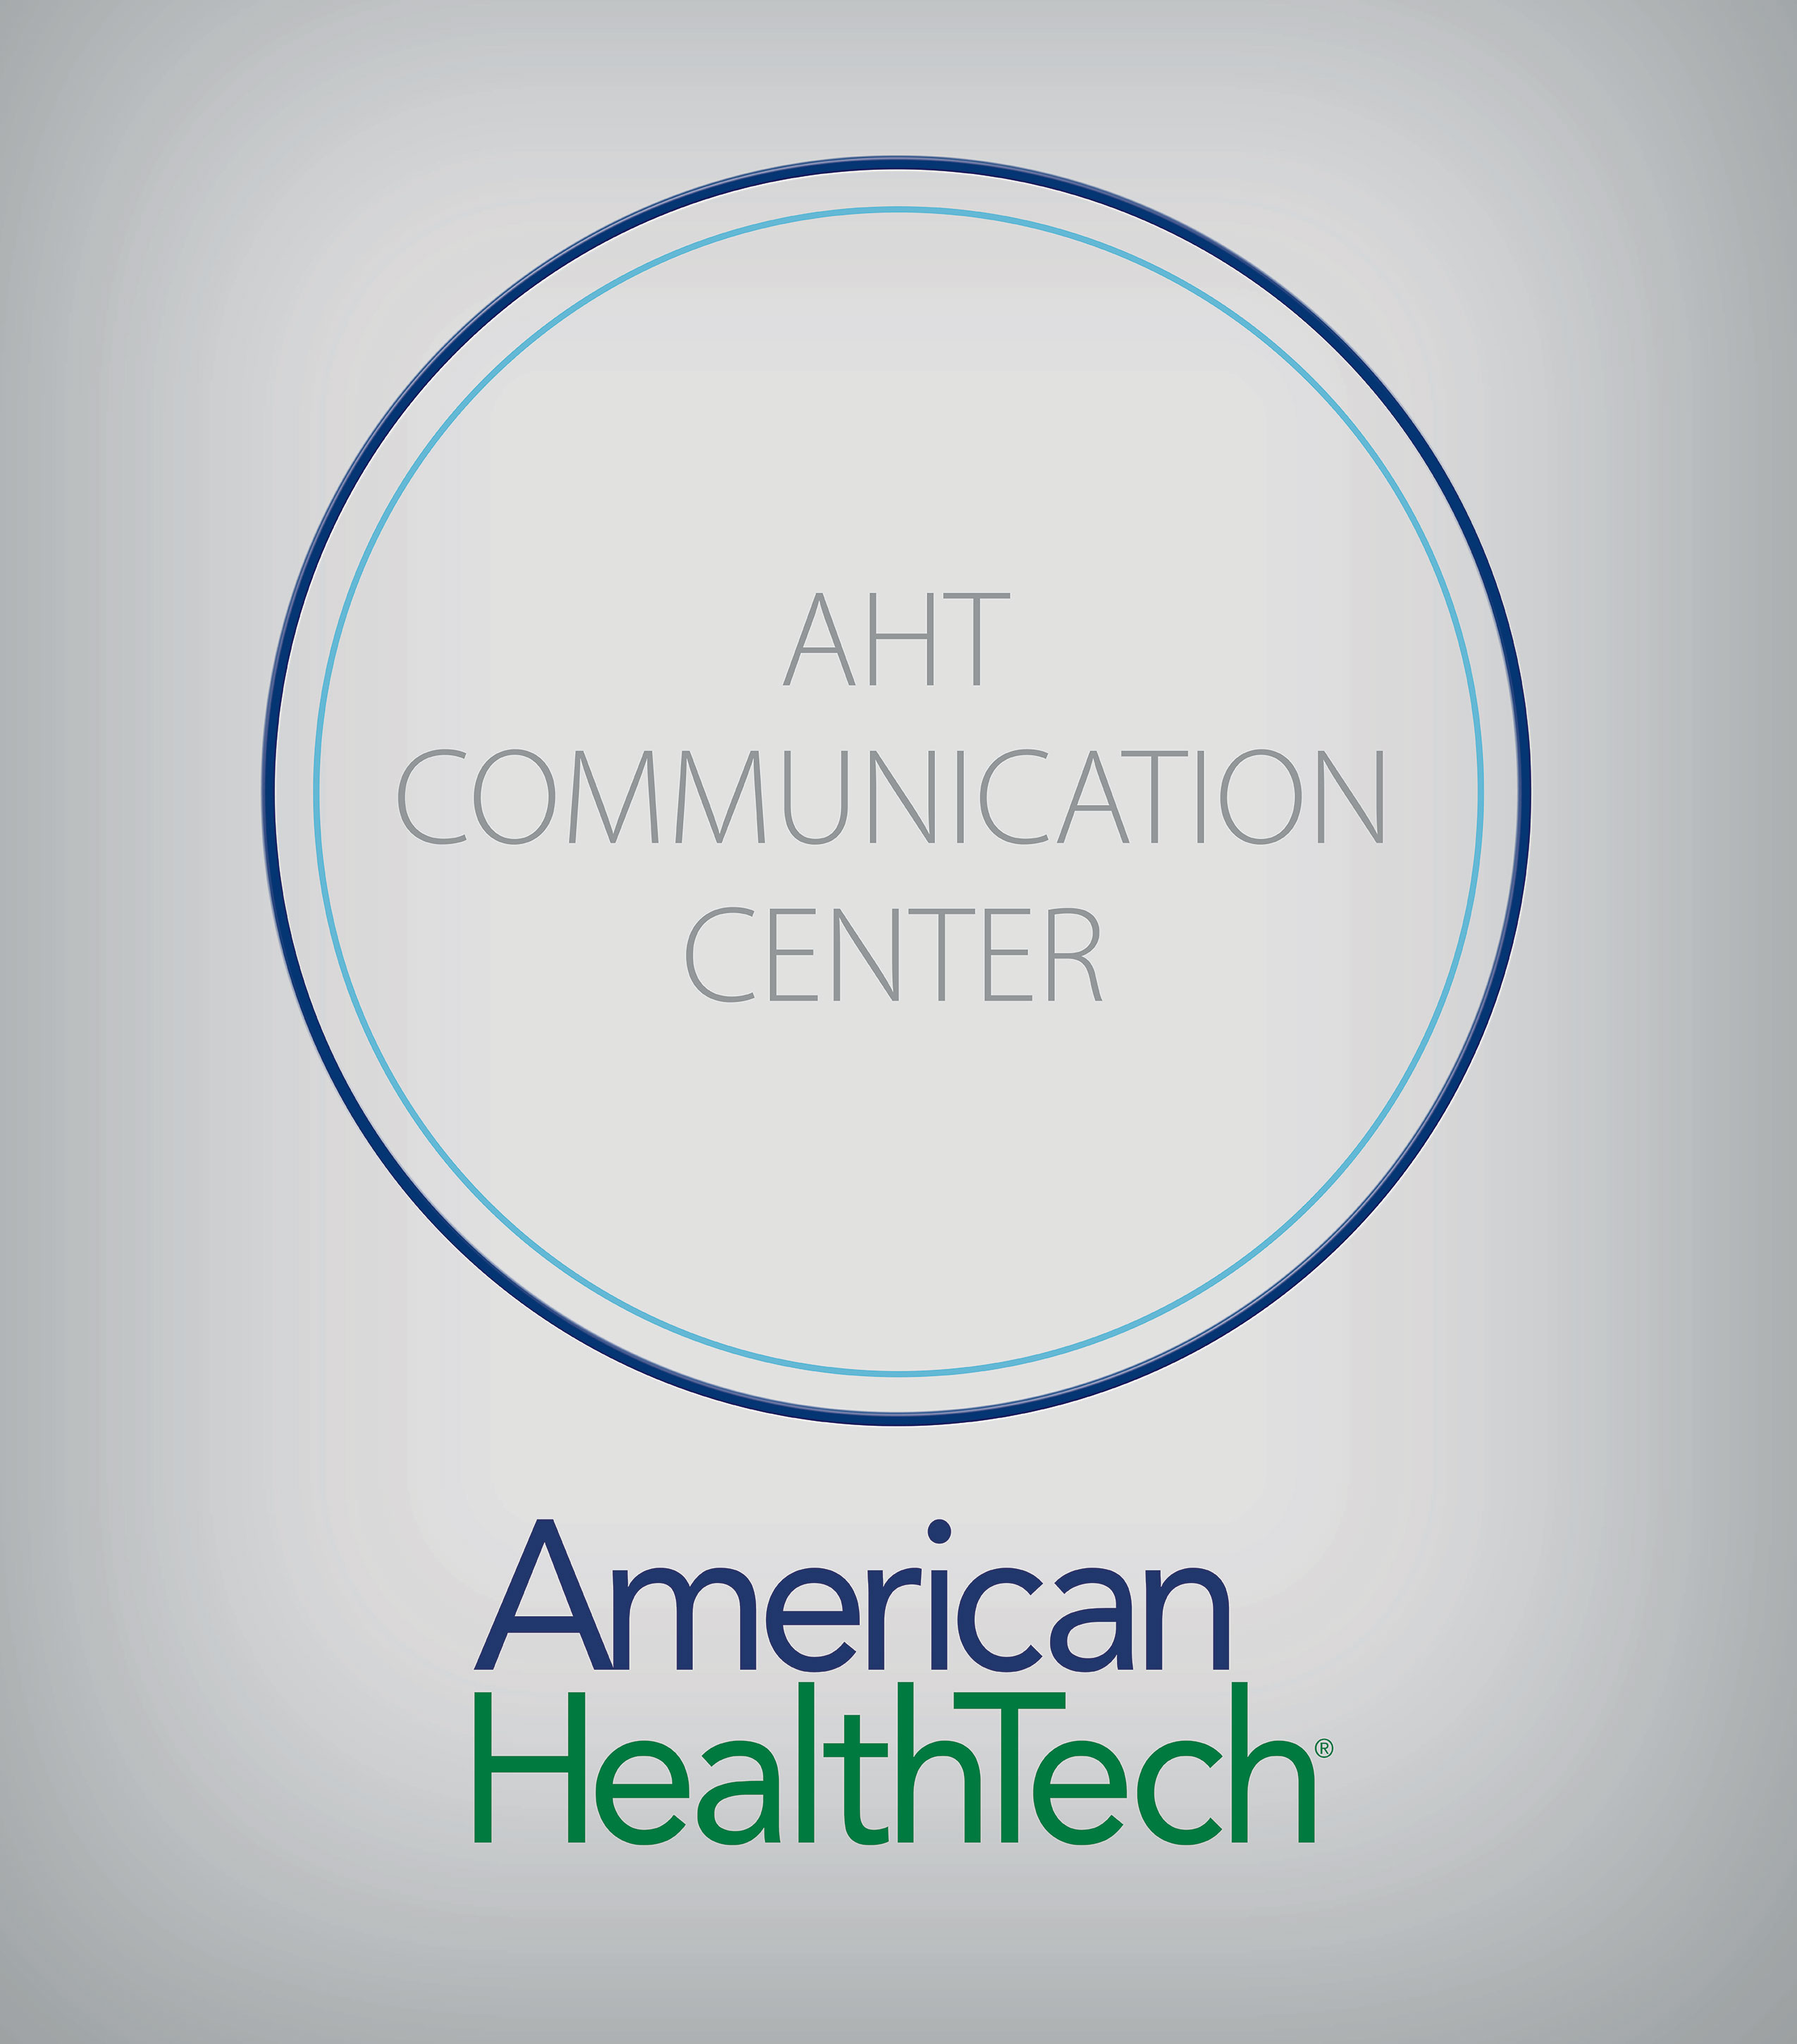 AHT Communication Center